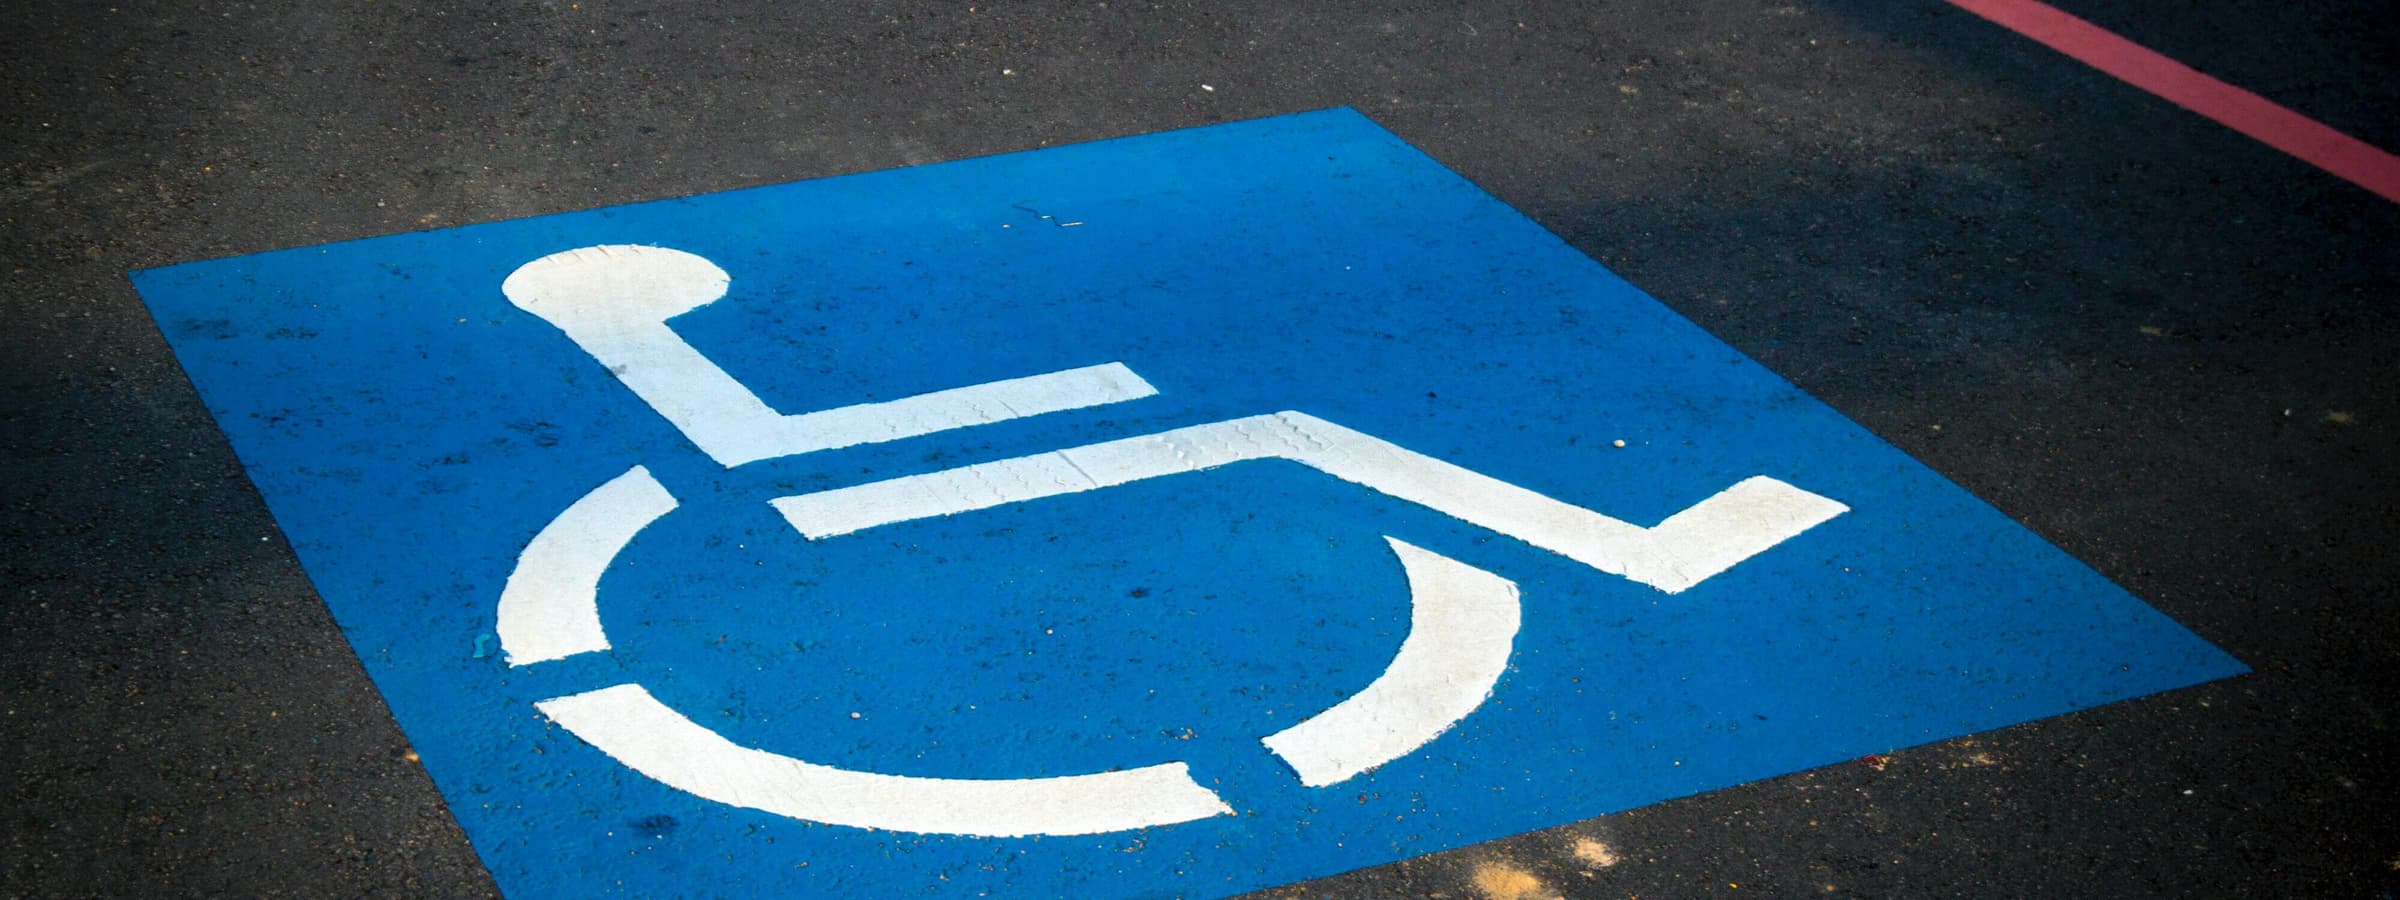 Handicap parking spot.